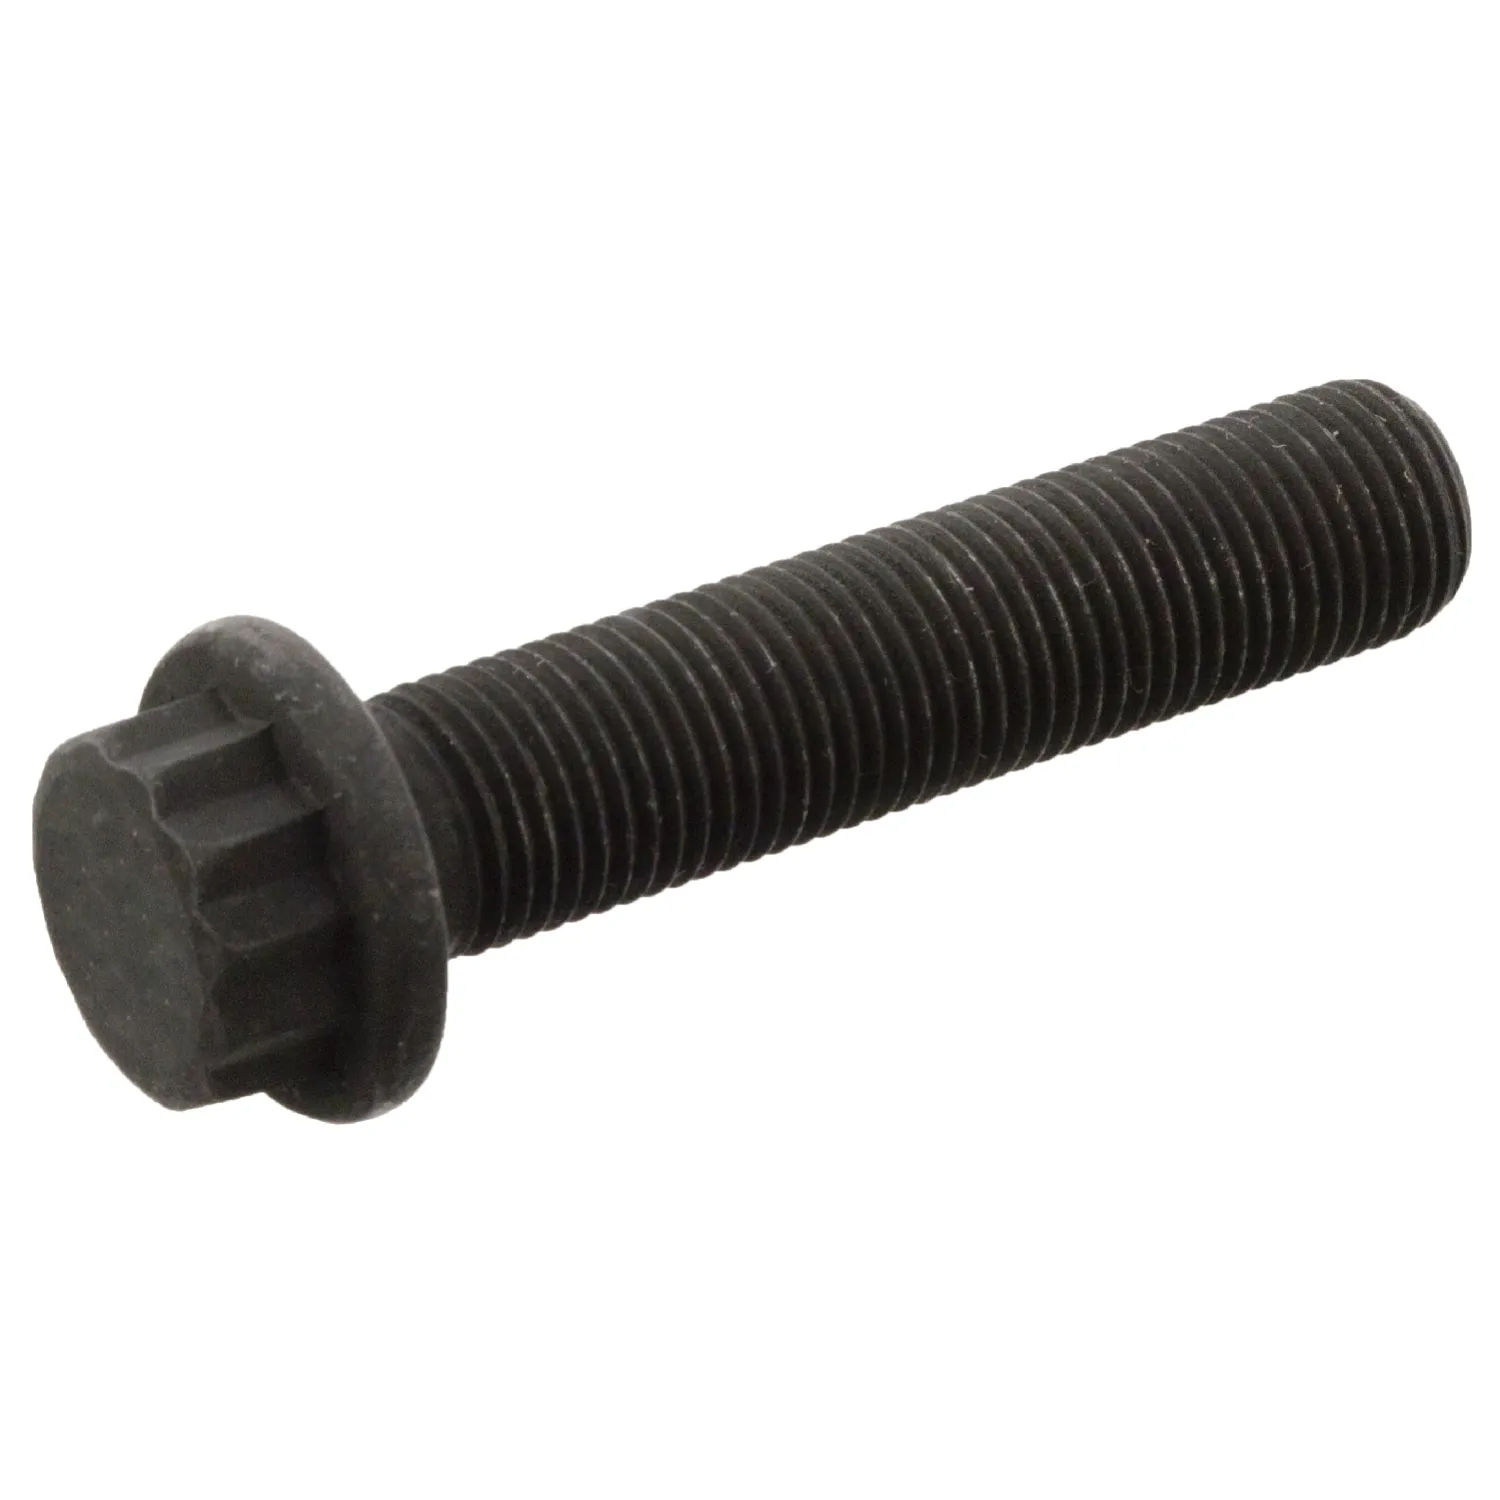 Connecting rod screw